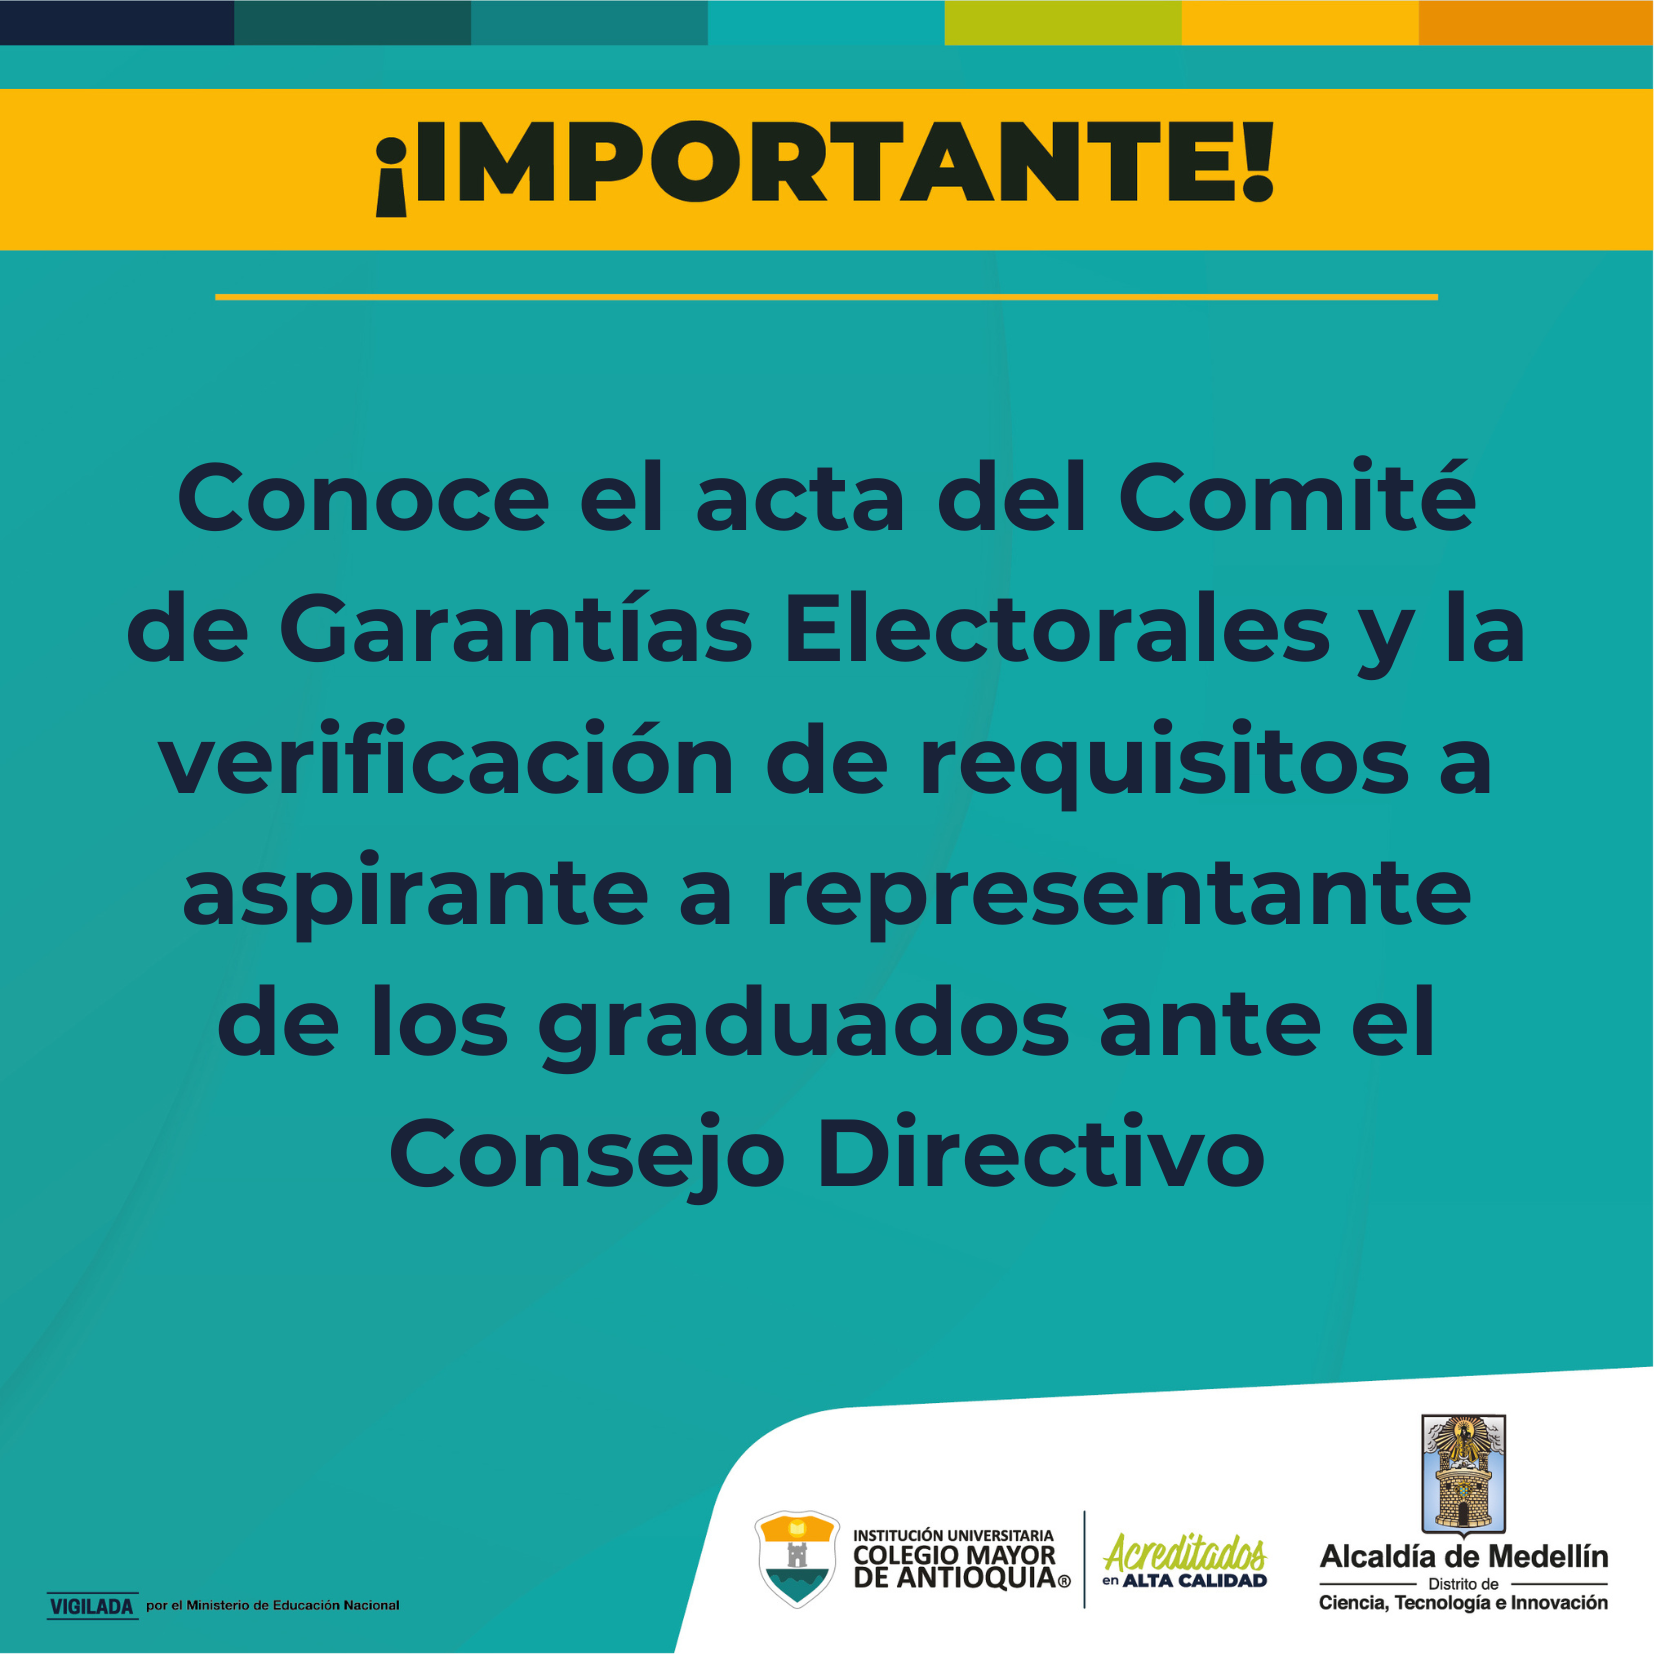 Acta del Comité de Garantías Electorales: Aspirantes a representantes de los graduados ante el Consejo Directivo